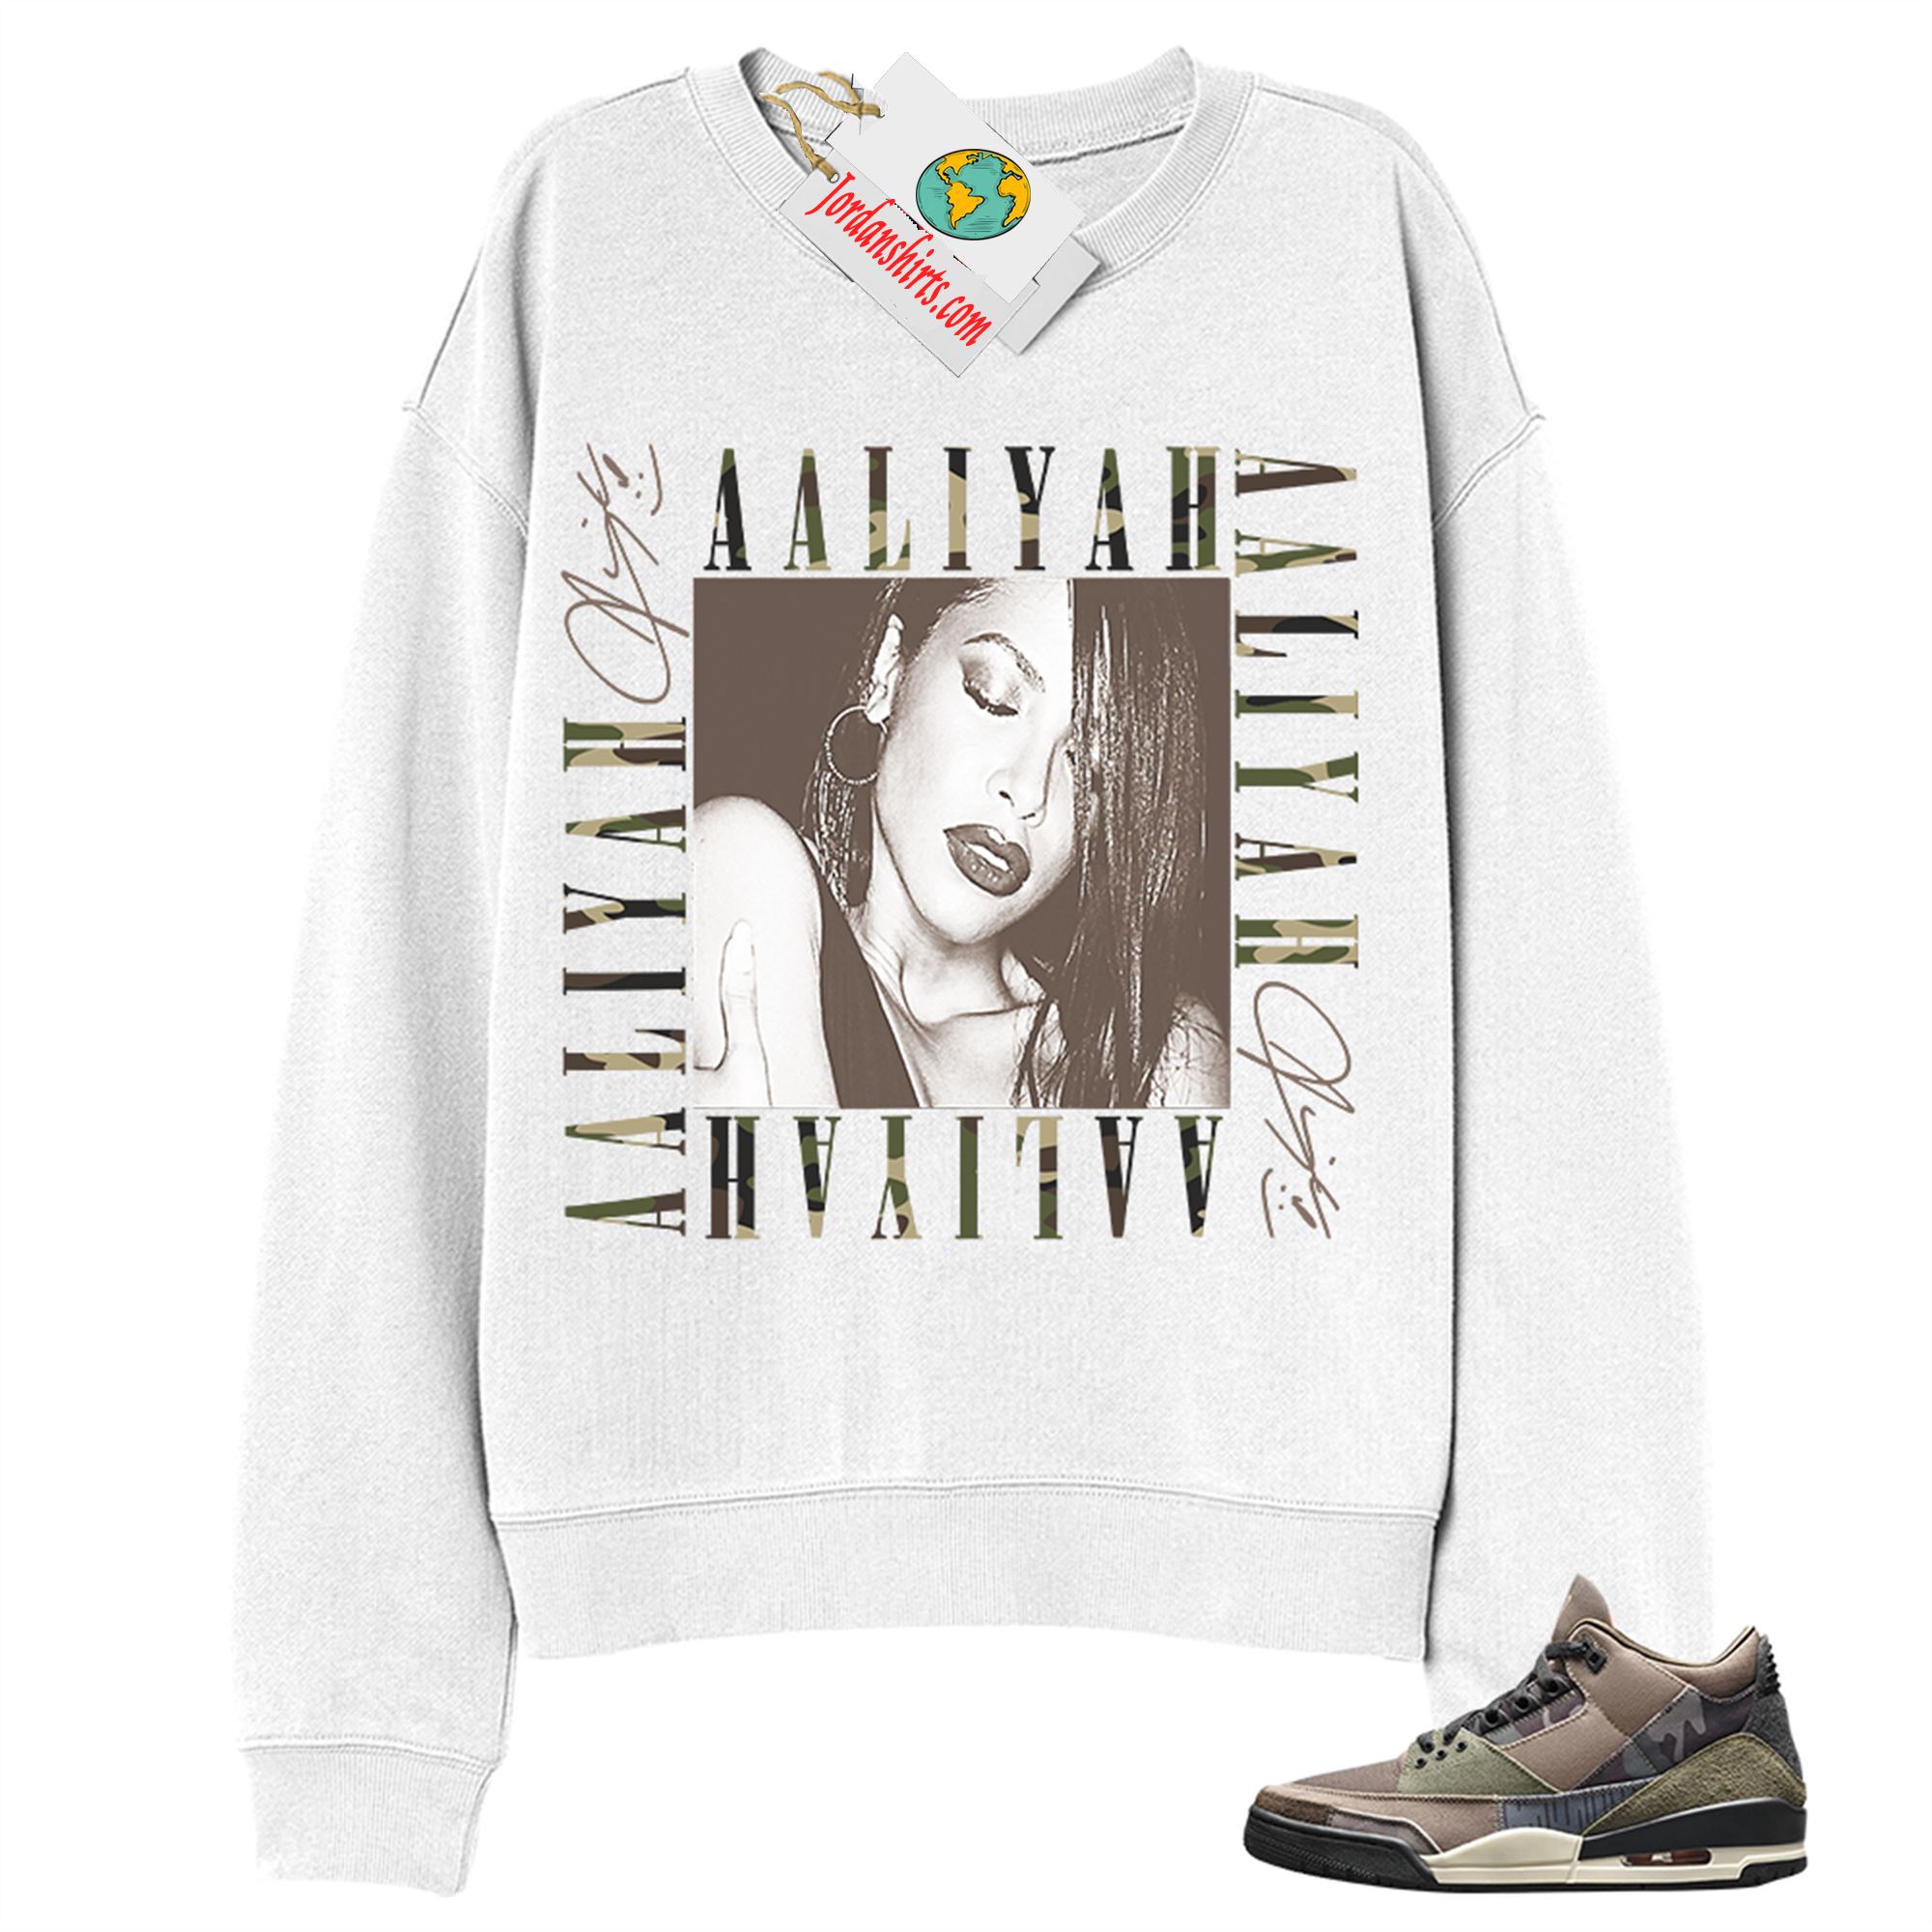 Jordan 3 Sweatshirt, Aaliyah Box White Sweatshirt Air Jordan 3 Camo 3s Plus Size Up To 5xl